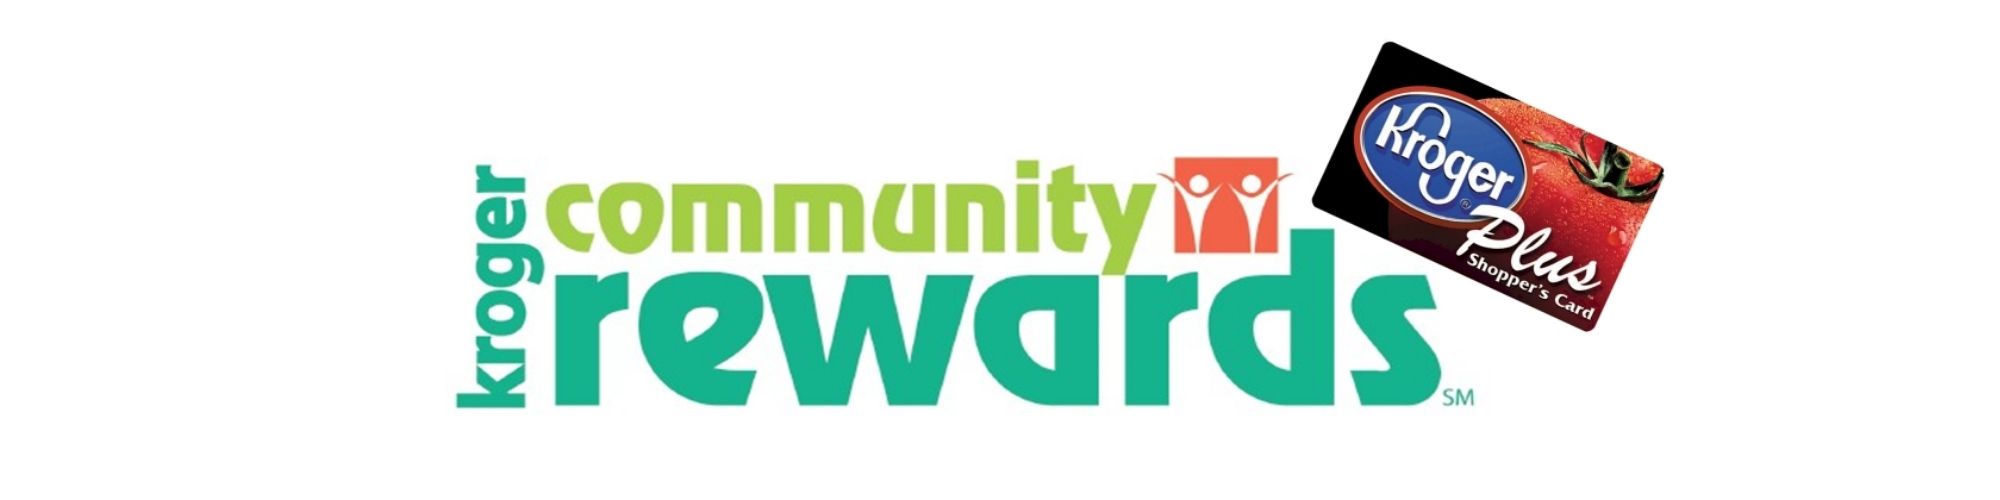 Kroger Community Rewards – Community Harvest Food Bank